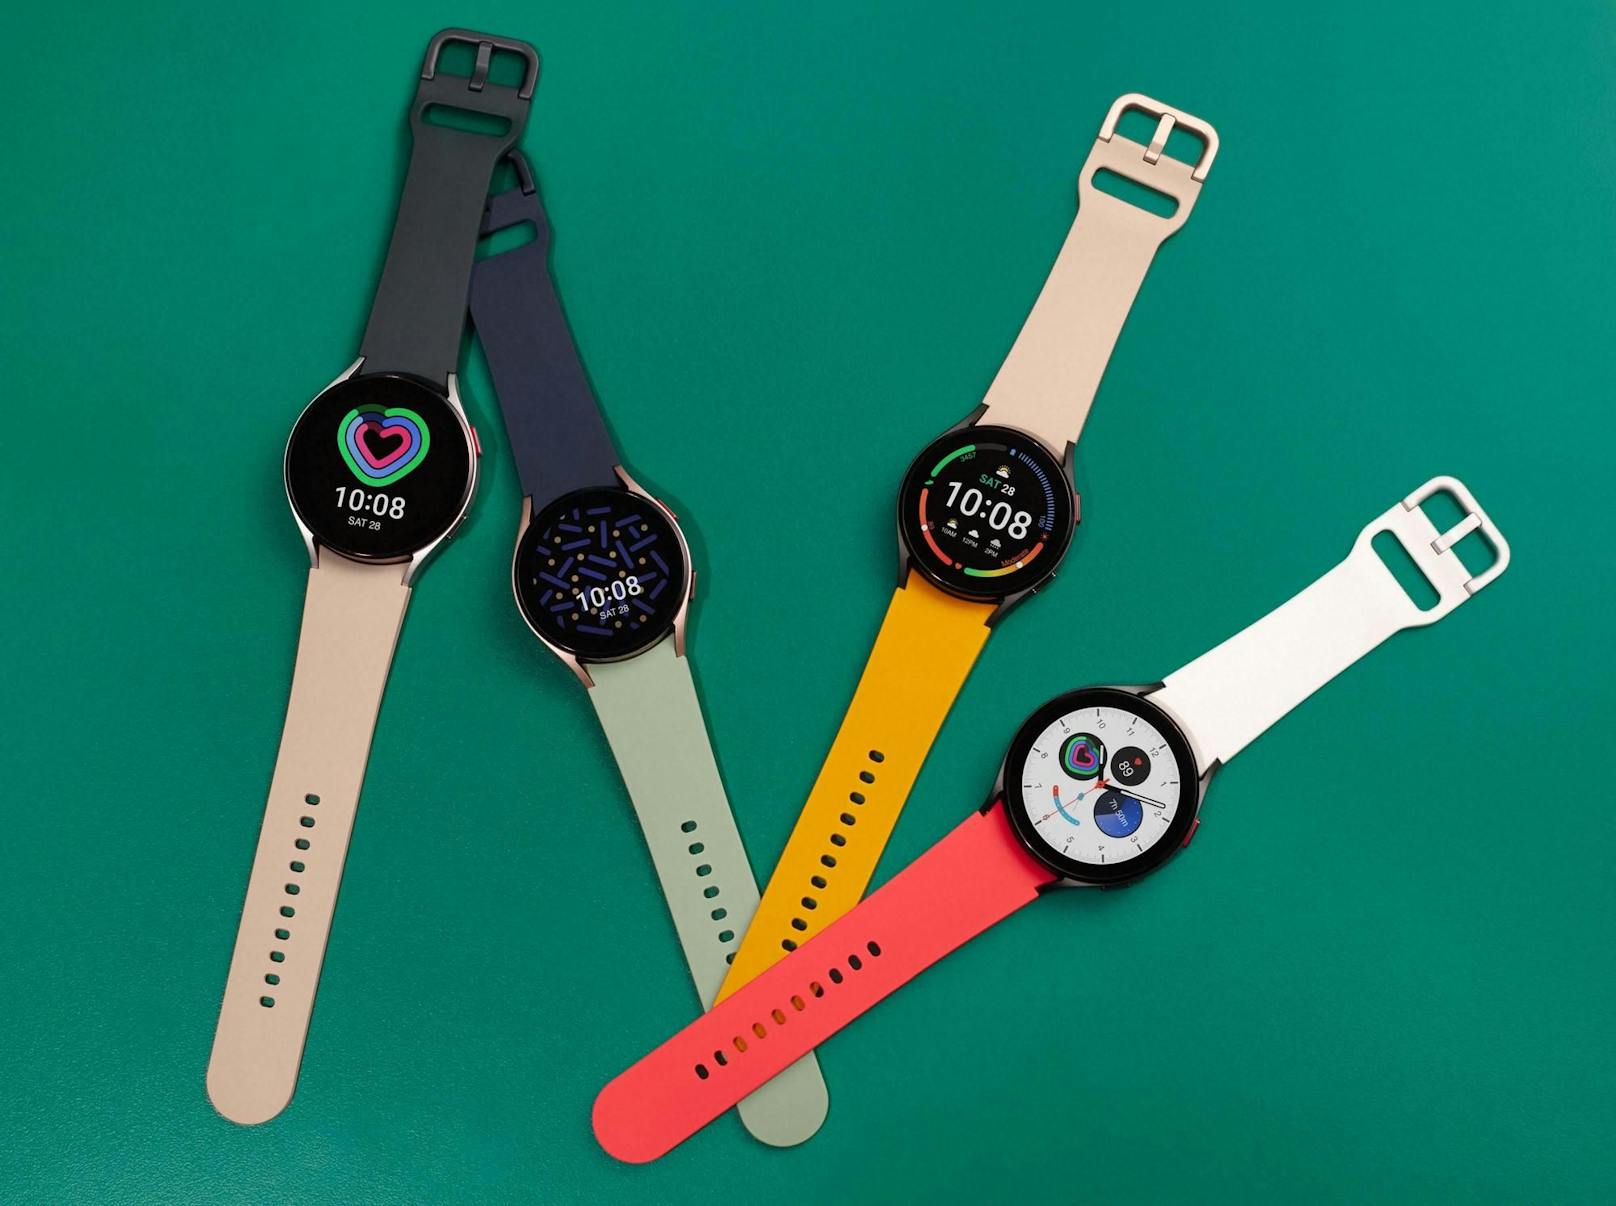 Enthüllt wurde auch eine neue Uhrenserie: Die Galaxy Watch 4 gibt es ab 269 Euro.